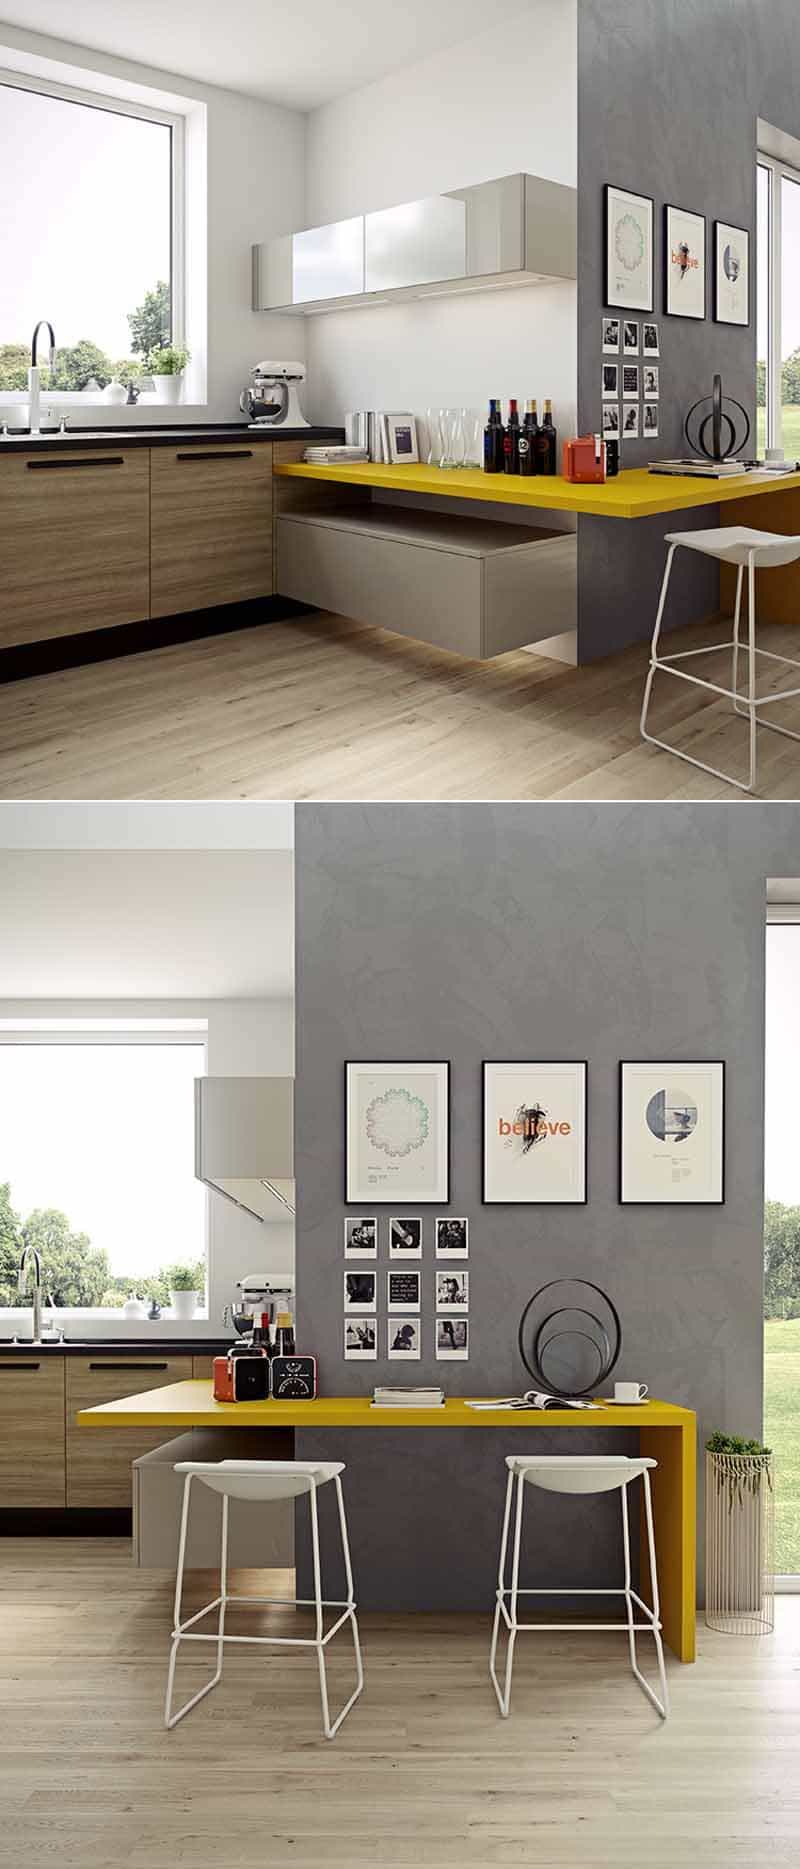 kitchen with large windows designrulz (1)